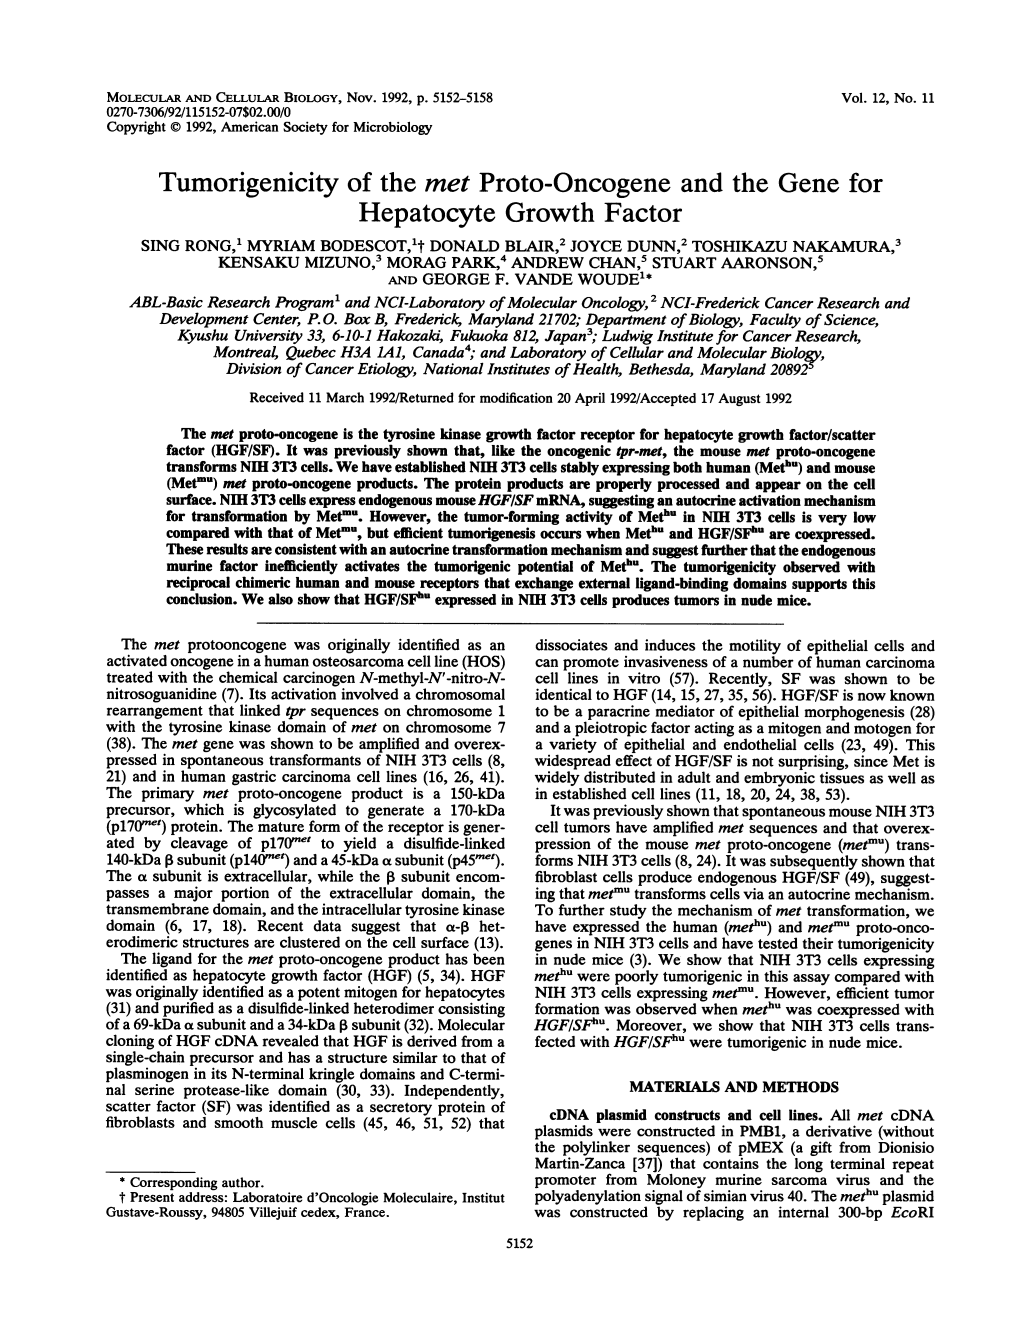 Tumorigenicity of the Met Proto-Oncogene and the Gene